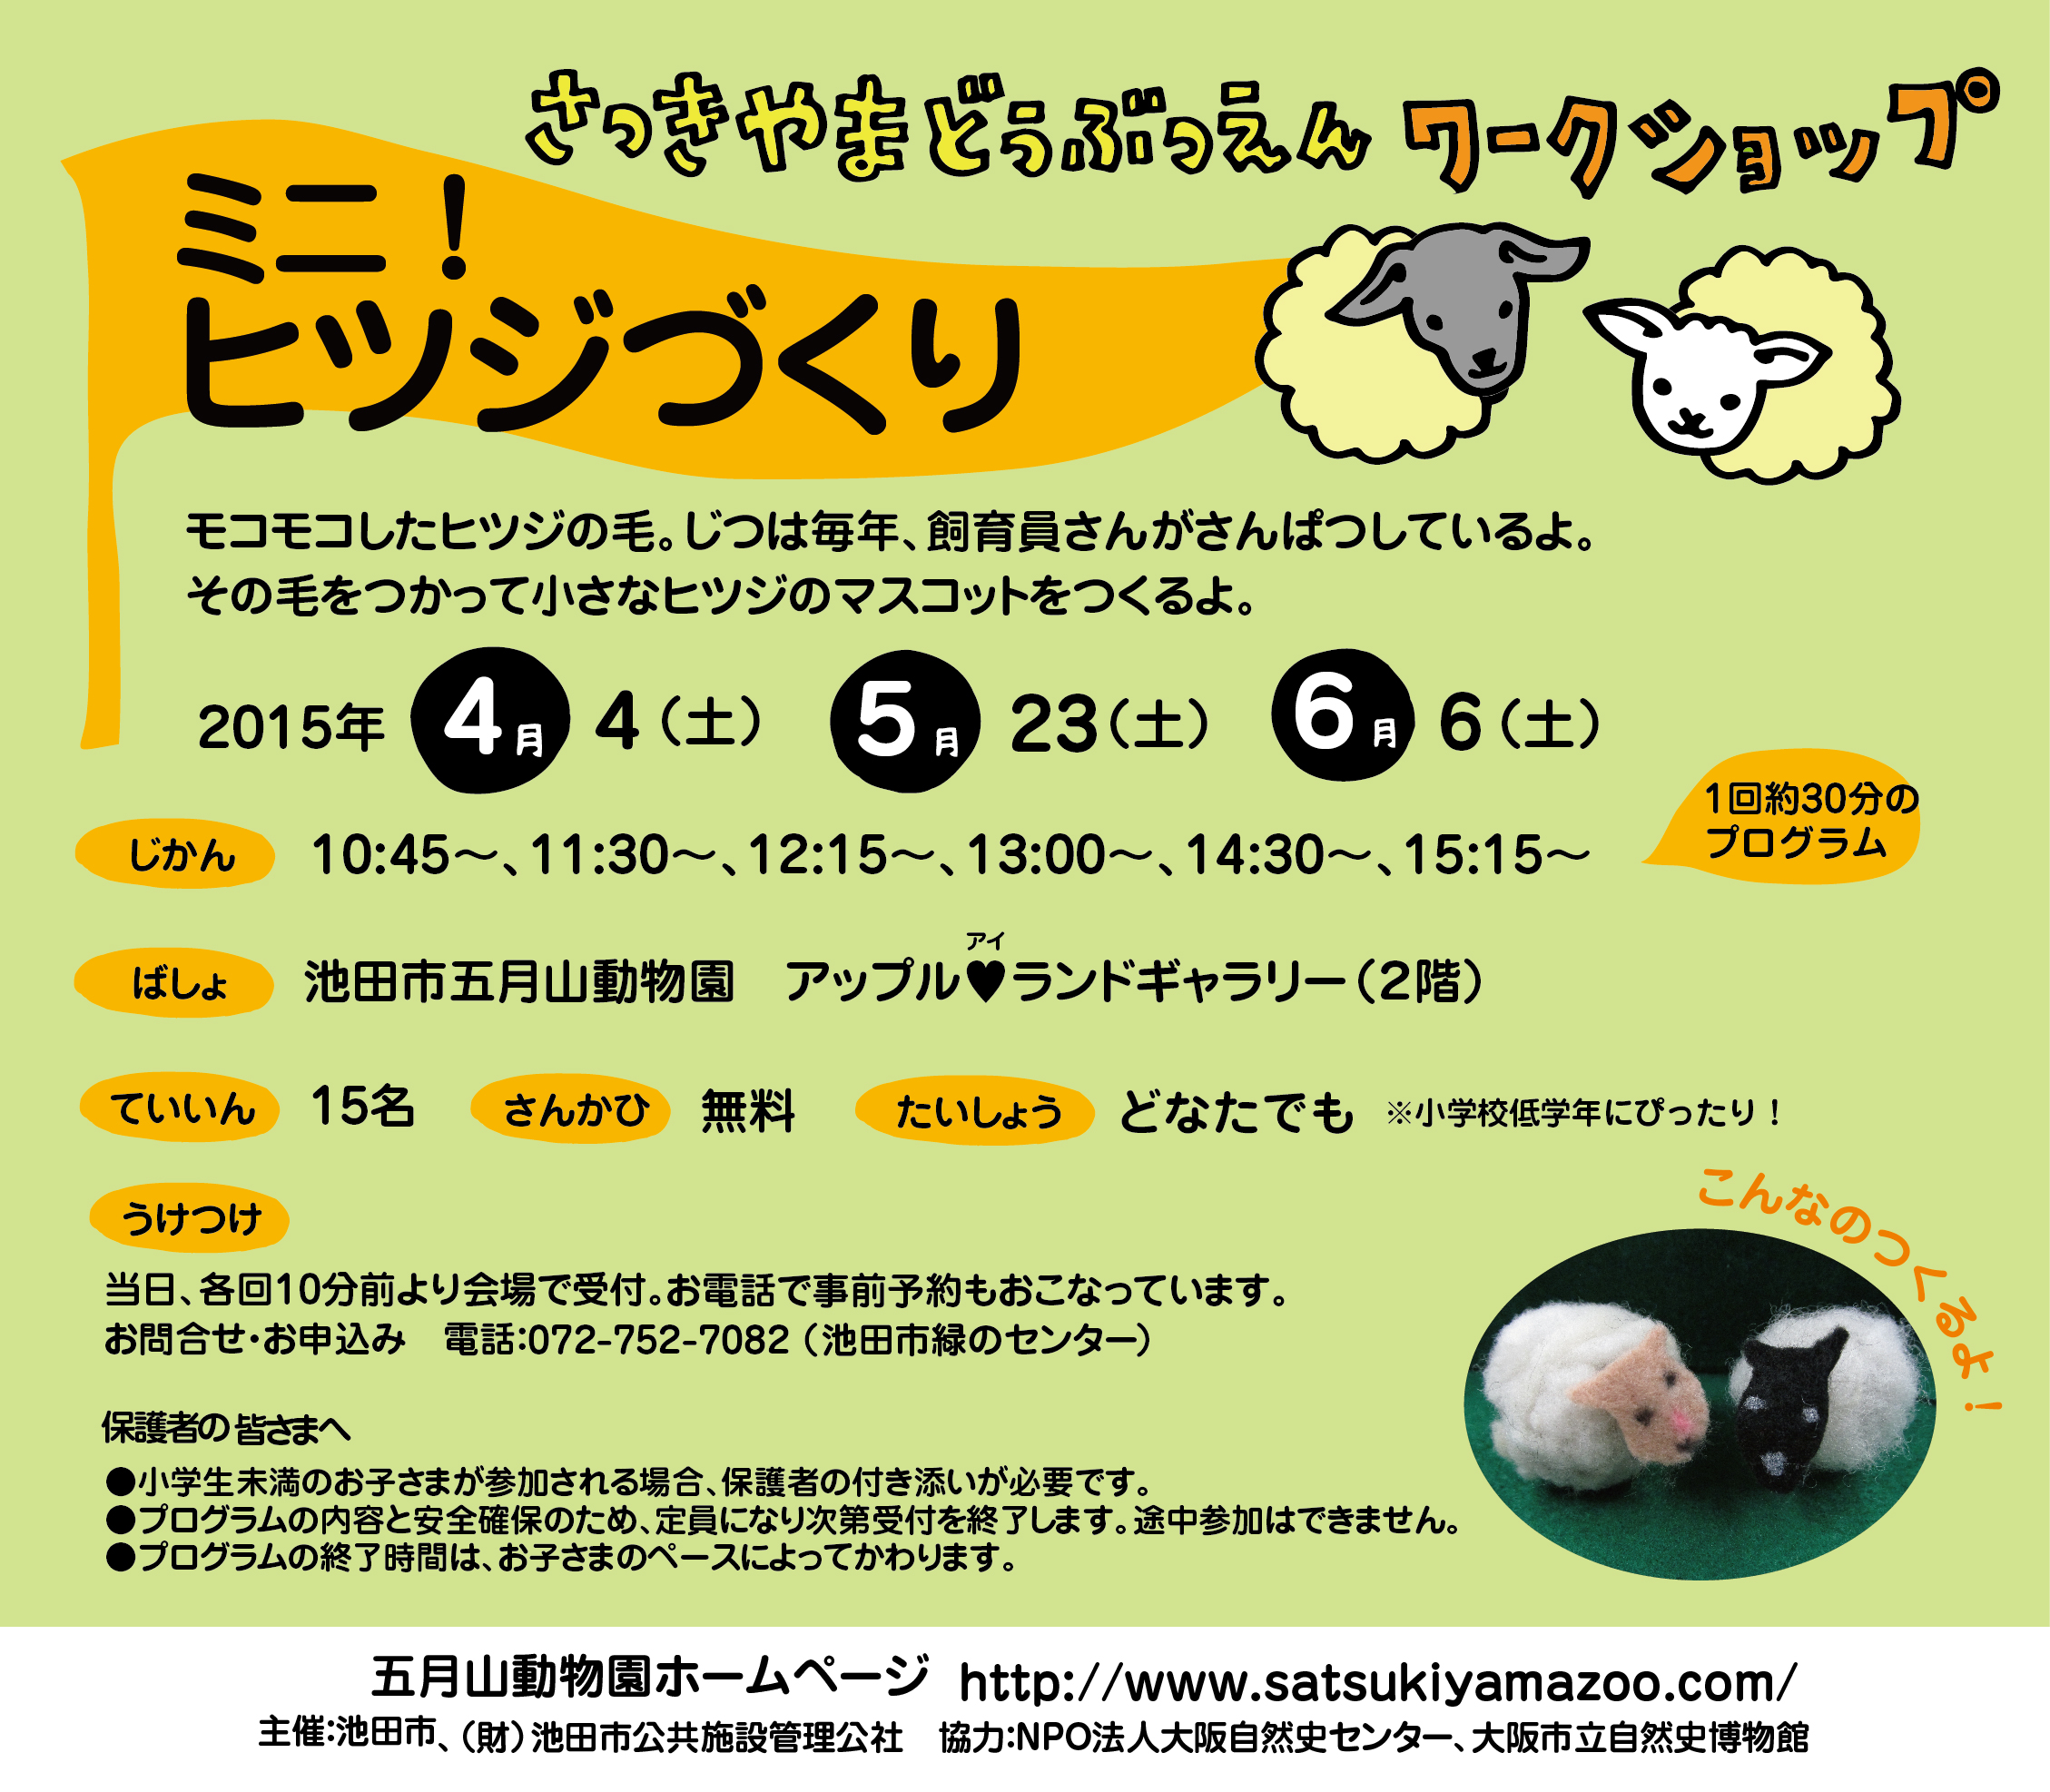 五月山動物園WSチラシ2015-4-6ヒツジ-02.jpg